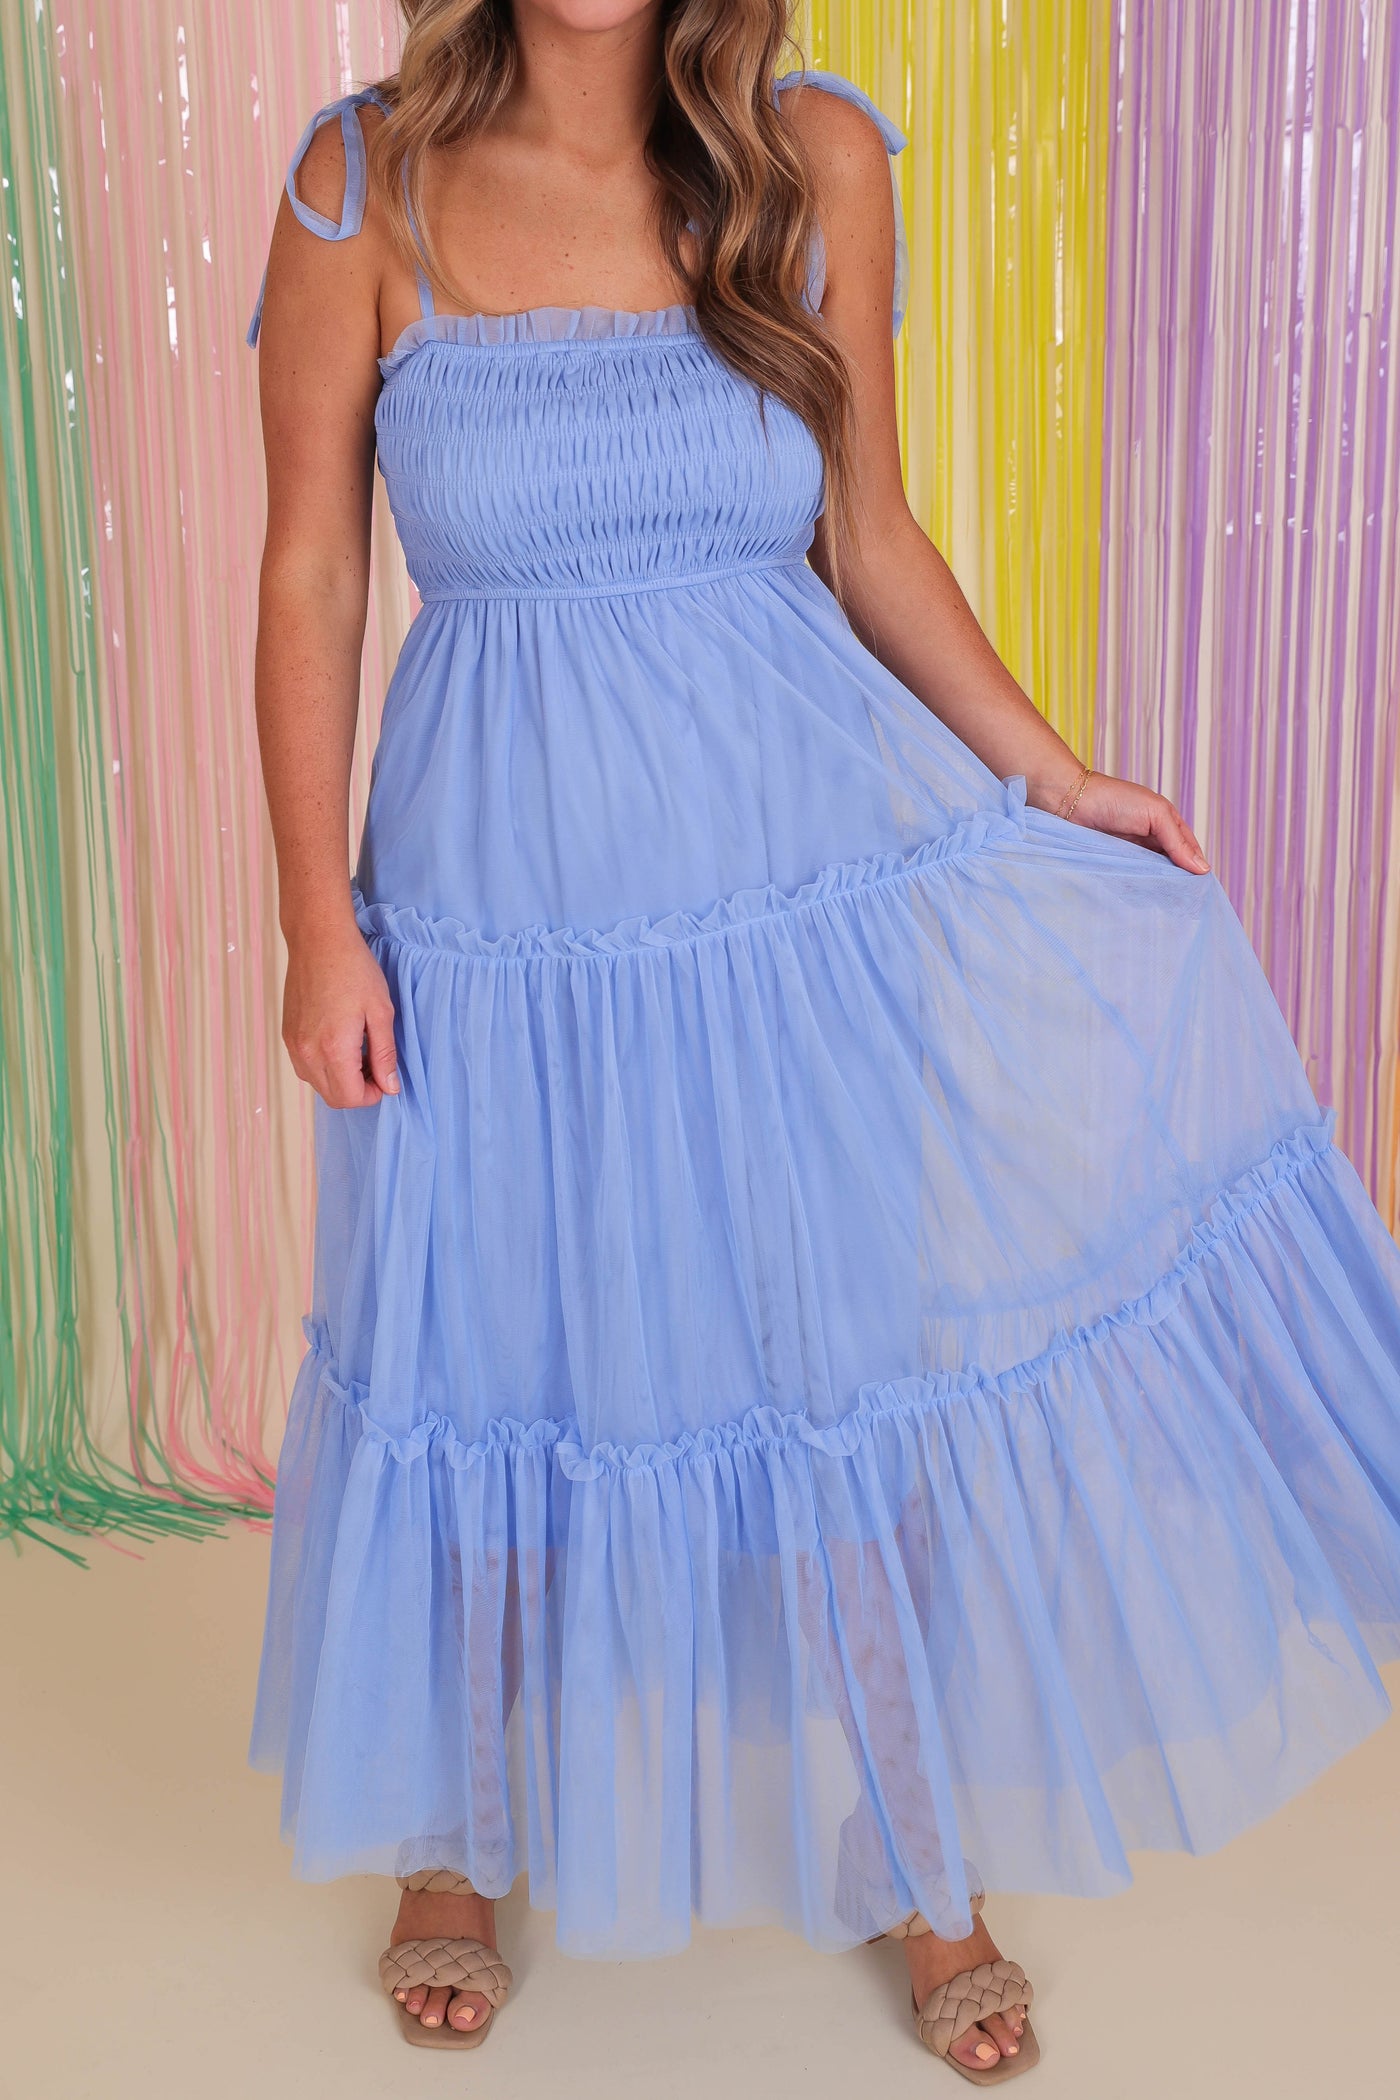 Blue Tulle Midi Dress- Women's Long Tulle Dress- &Merci Dresses